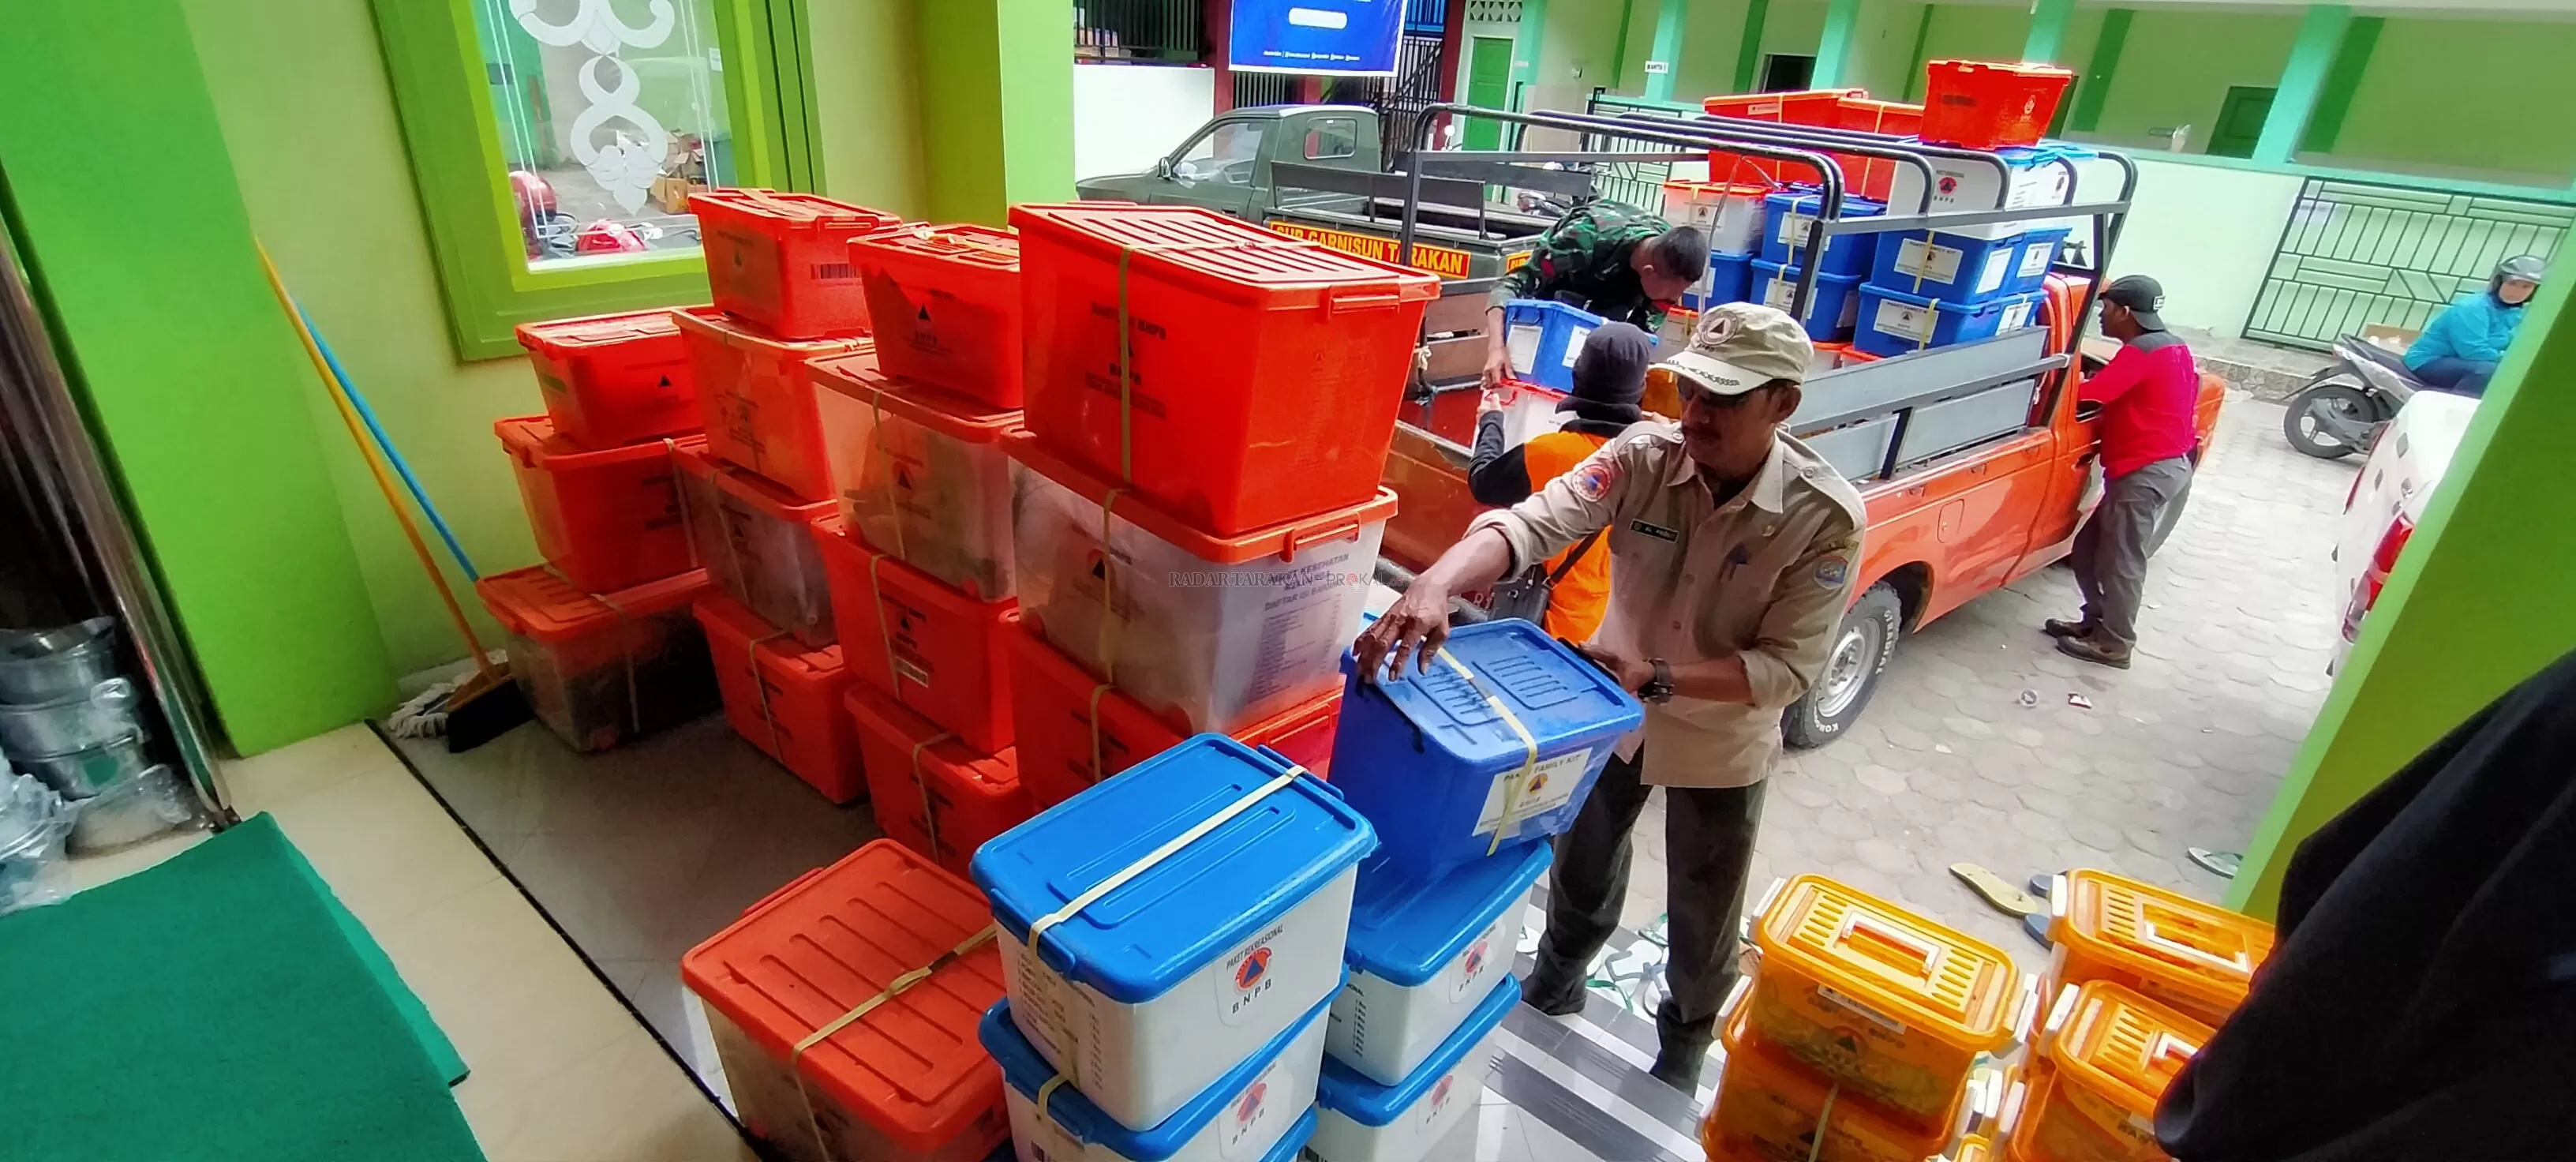 PAKET SEMBAKO : Sebanyak 226 paket sembako akan kembali diberikan kepada korban.